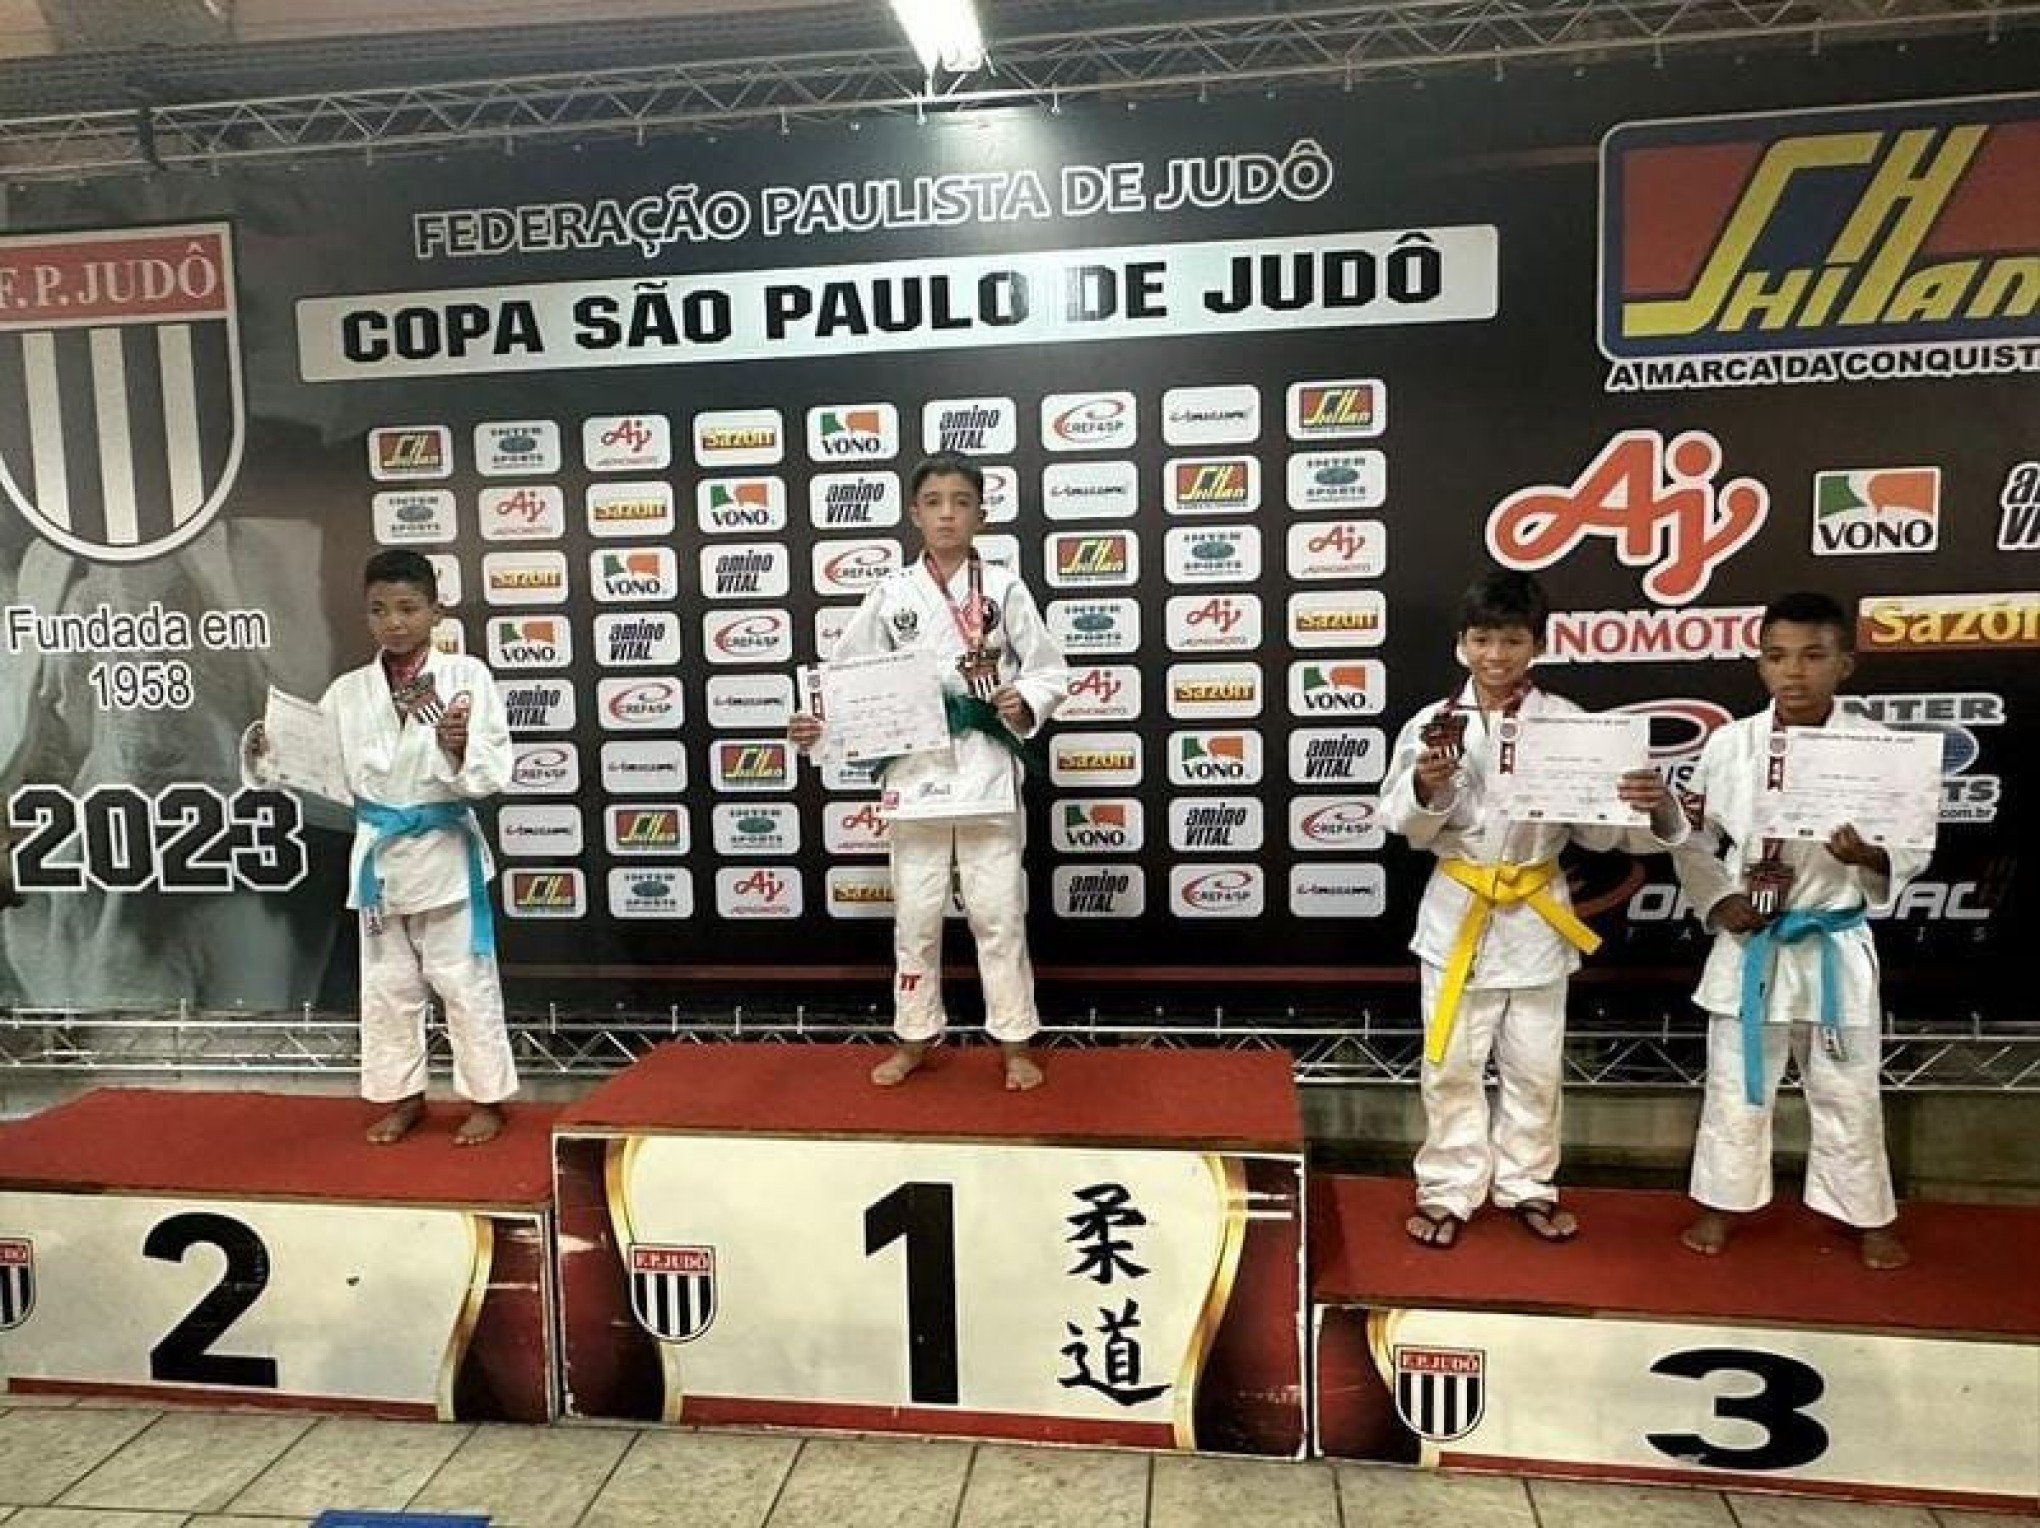 Judoca de Novo Hamburgo é campeão da Copa São Paulo de Judô